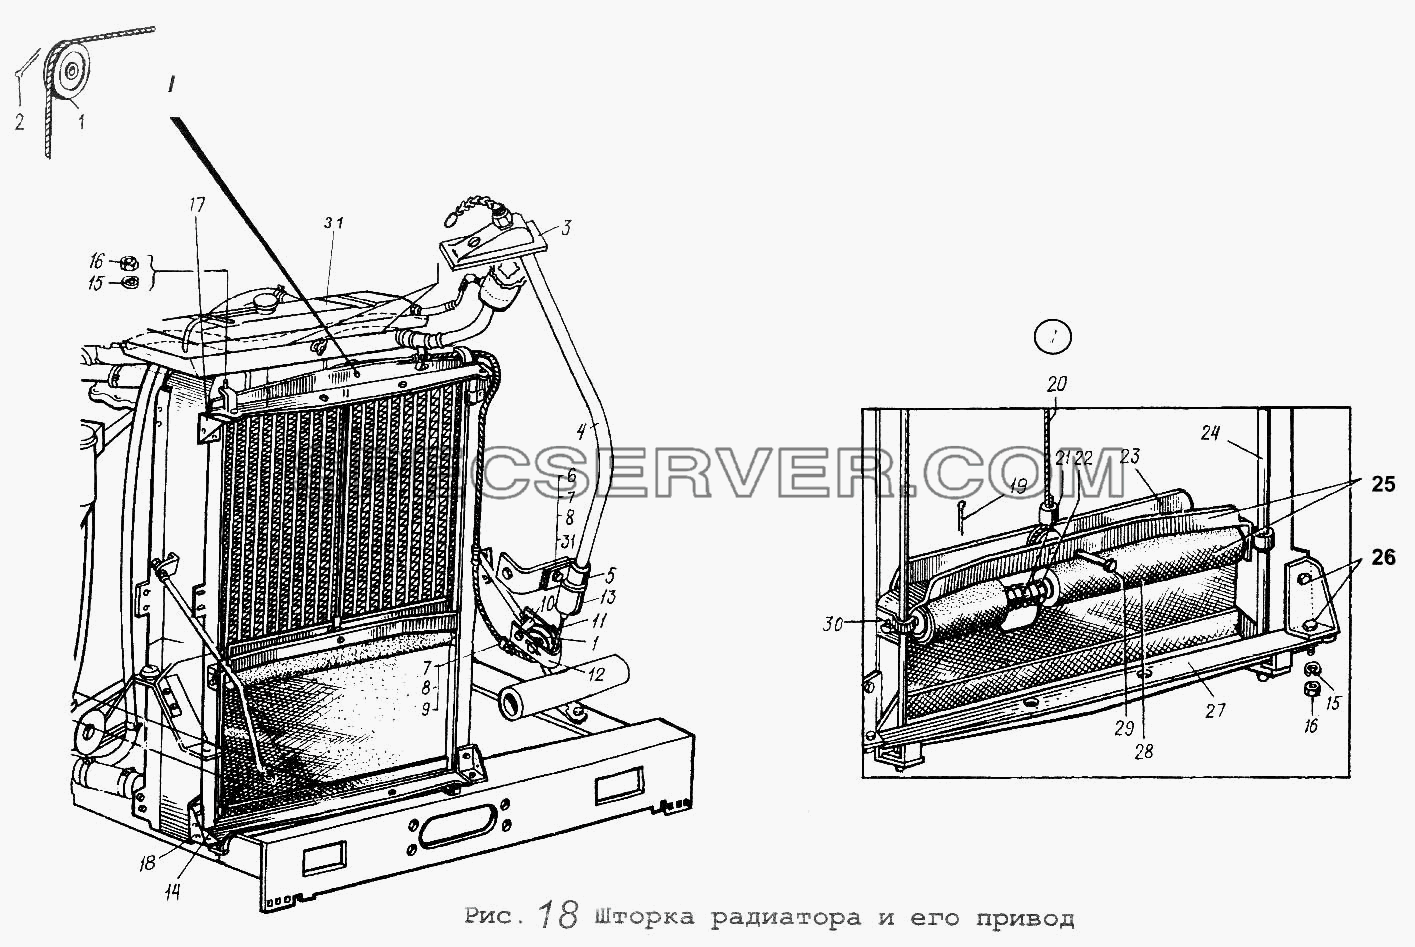 Шторка радиатора и его привод для МАЗ-5516 (список запасных частей)